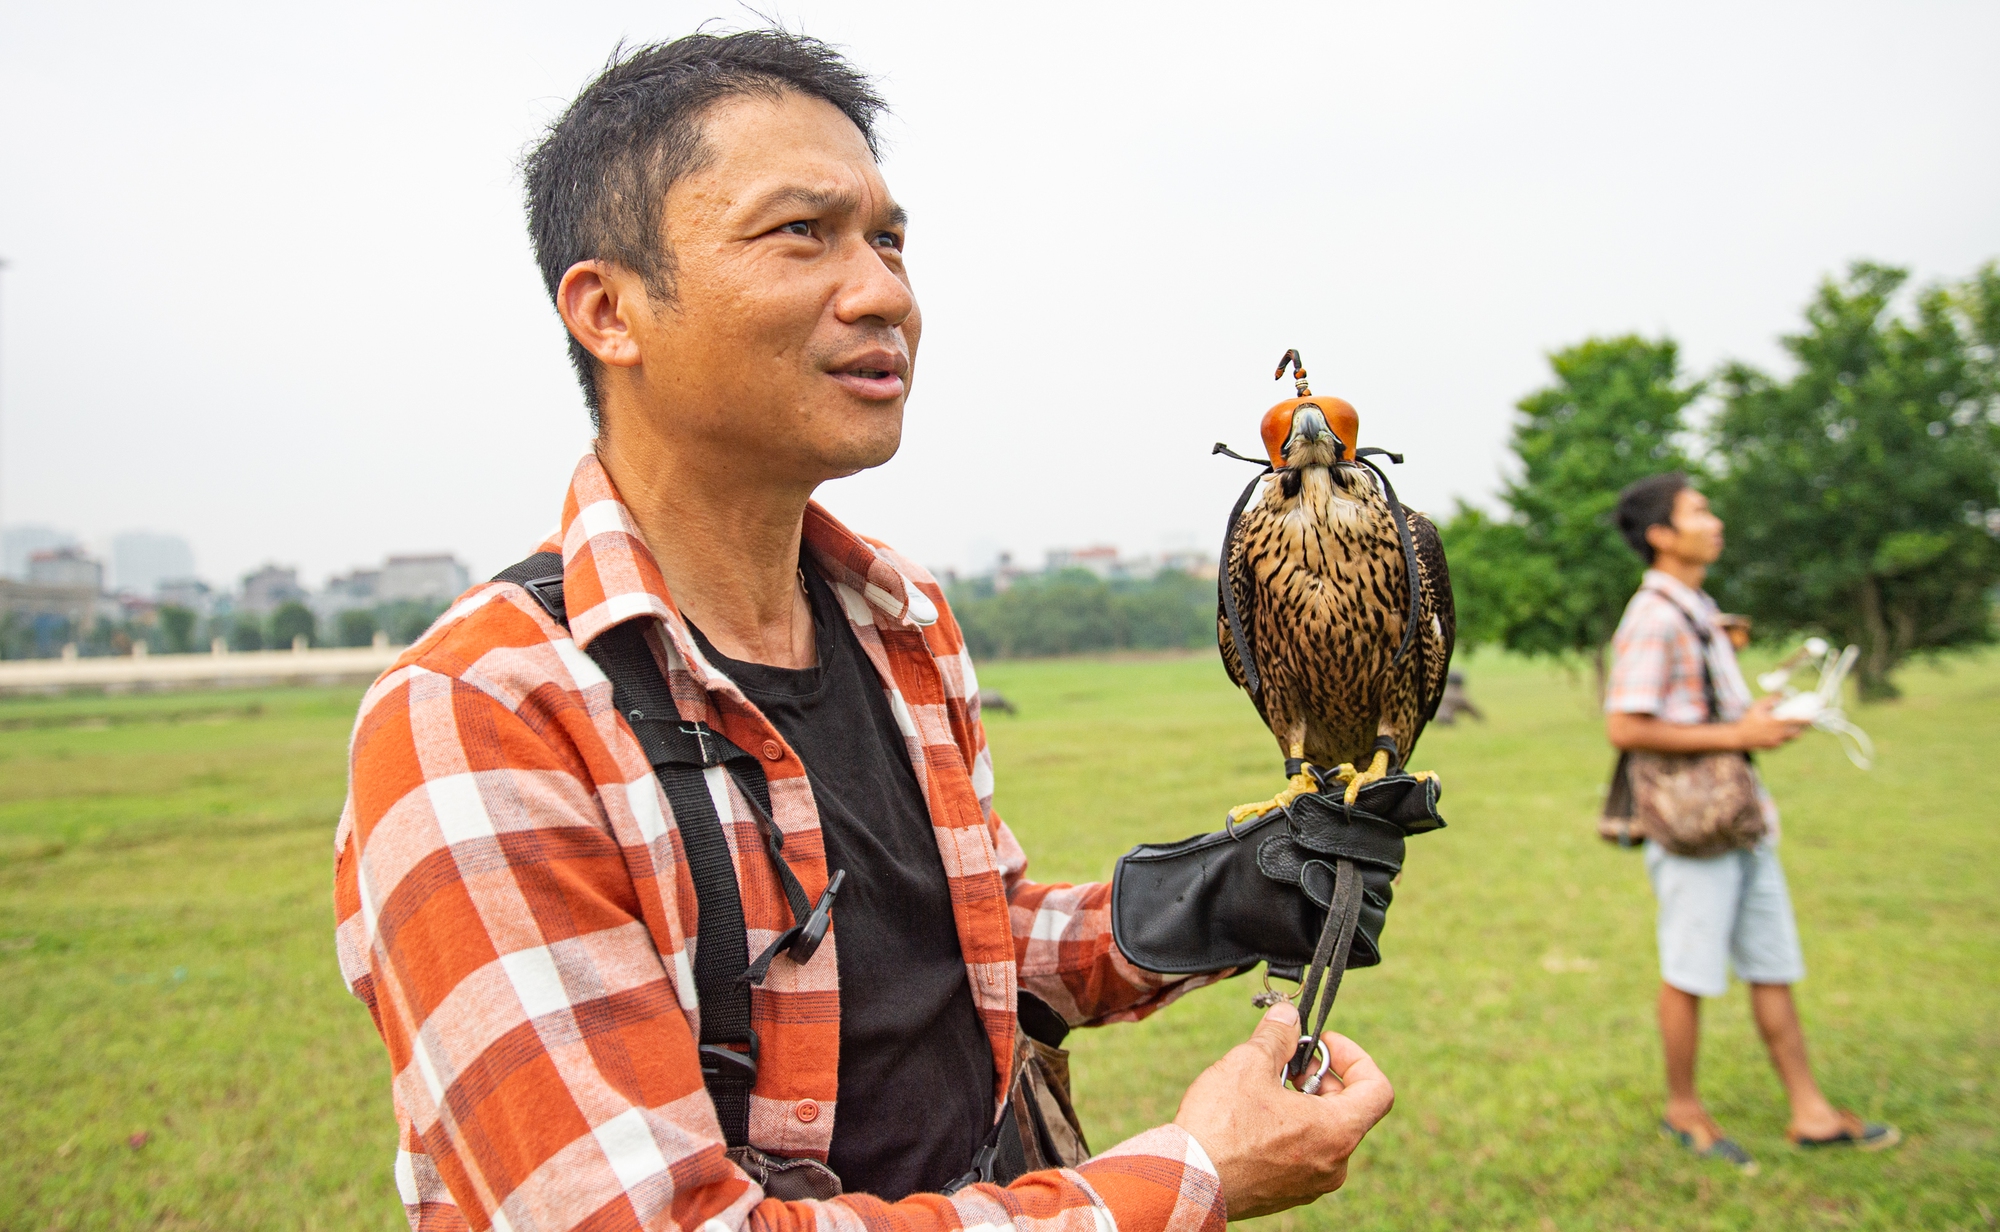 Ảnh: Dùng flycam, định vị GPS, tiêu tốn hàng chục triệu huấn luyện chim săn mồi để giải trí - Ảnh 14.